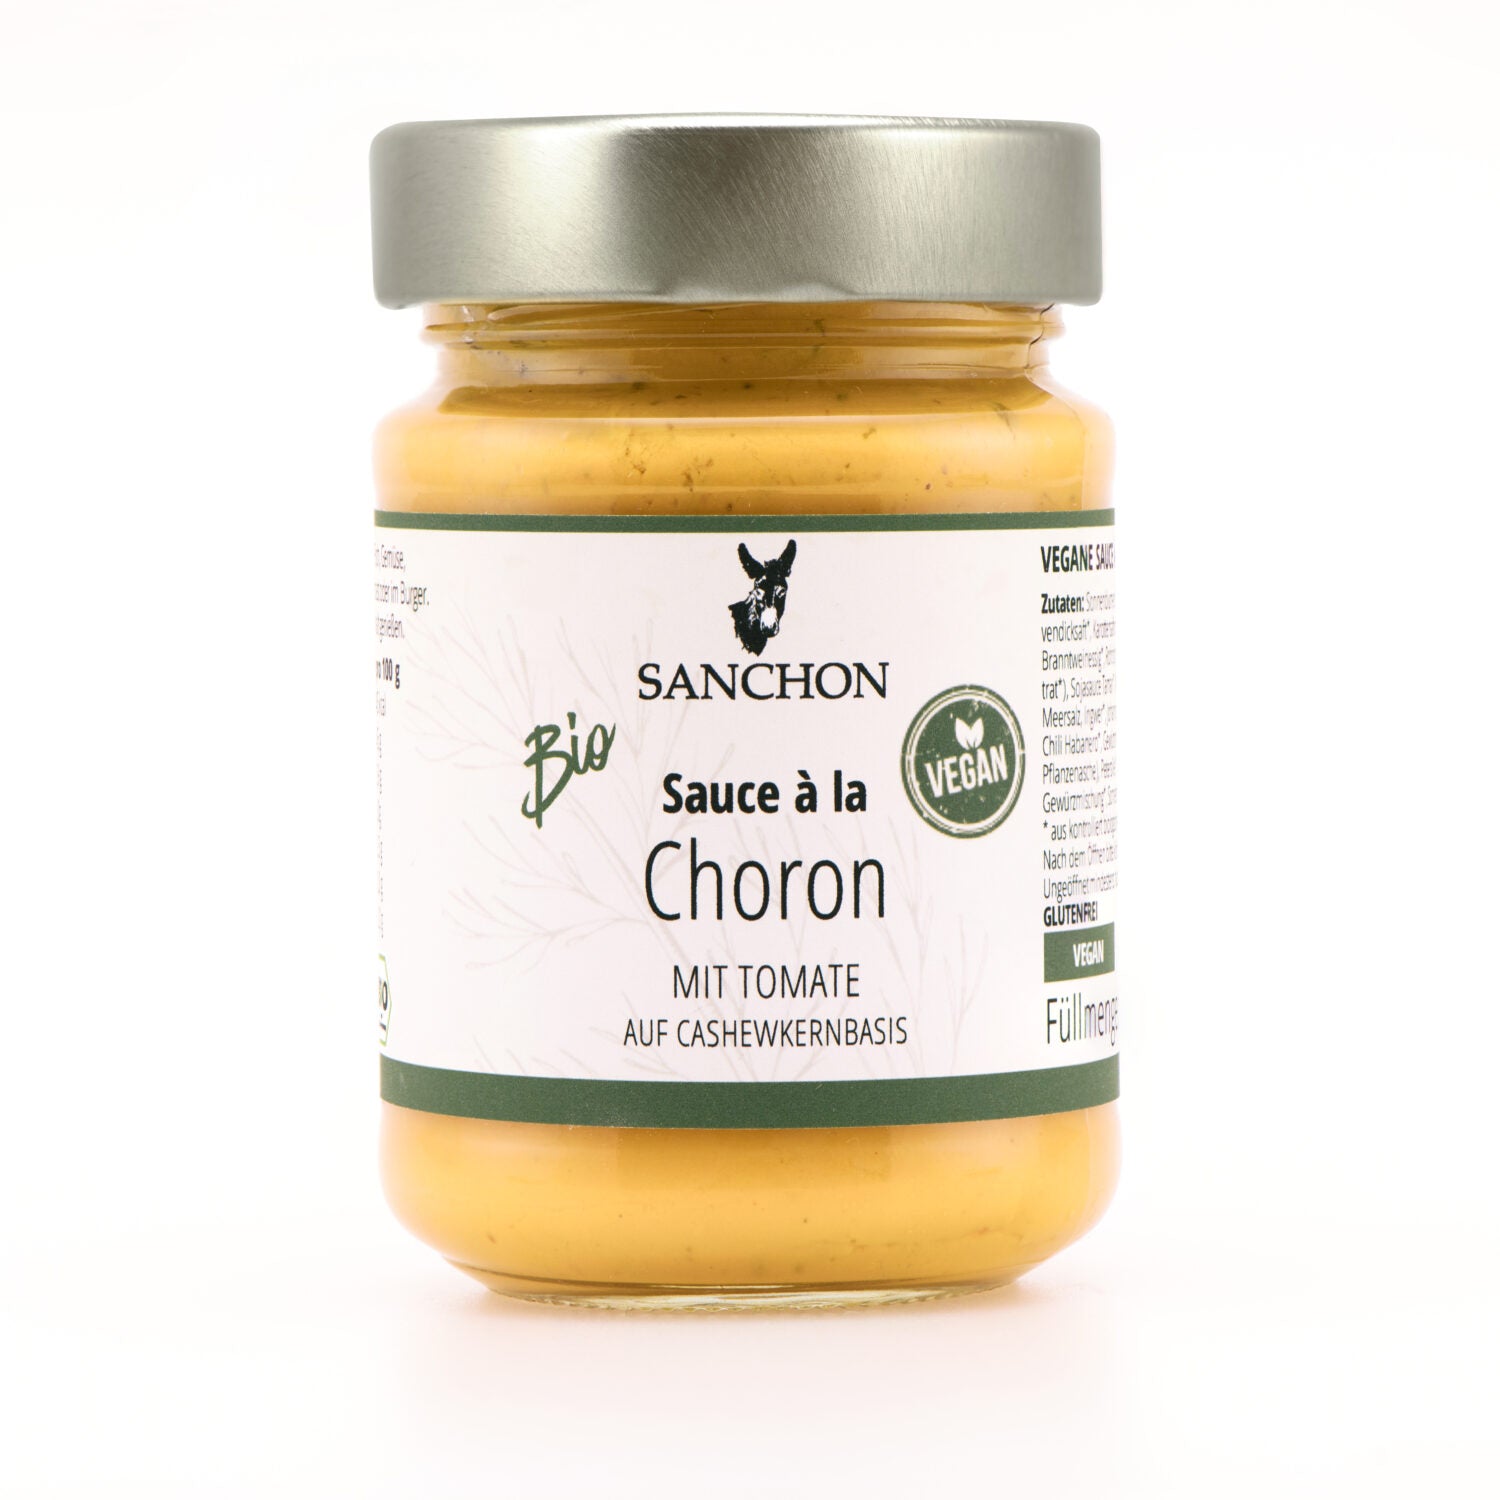 Sanchon Sauce à la Choron